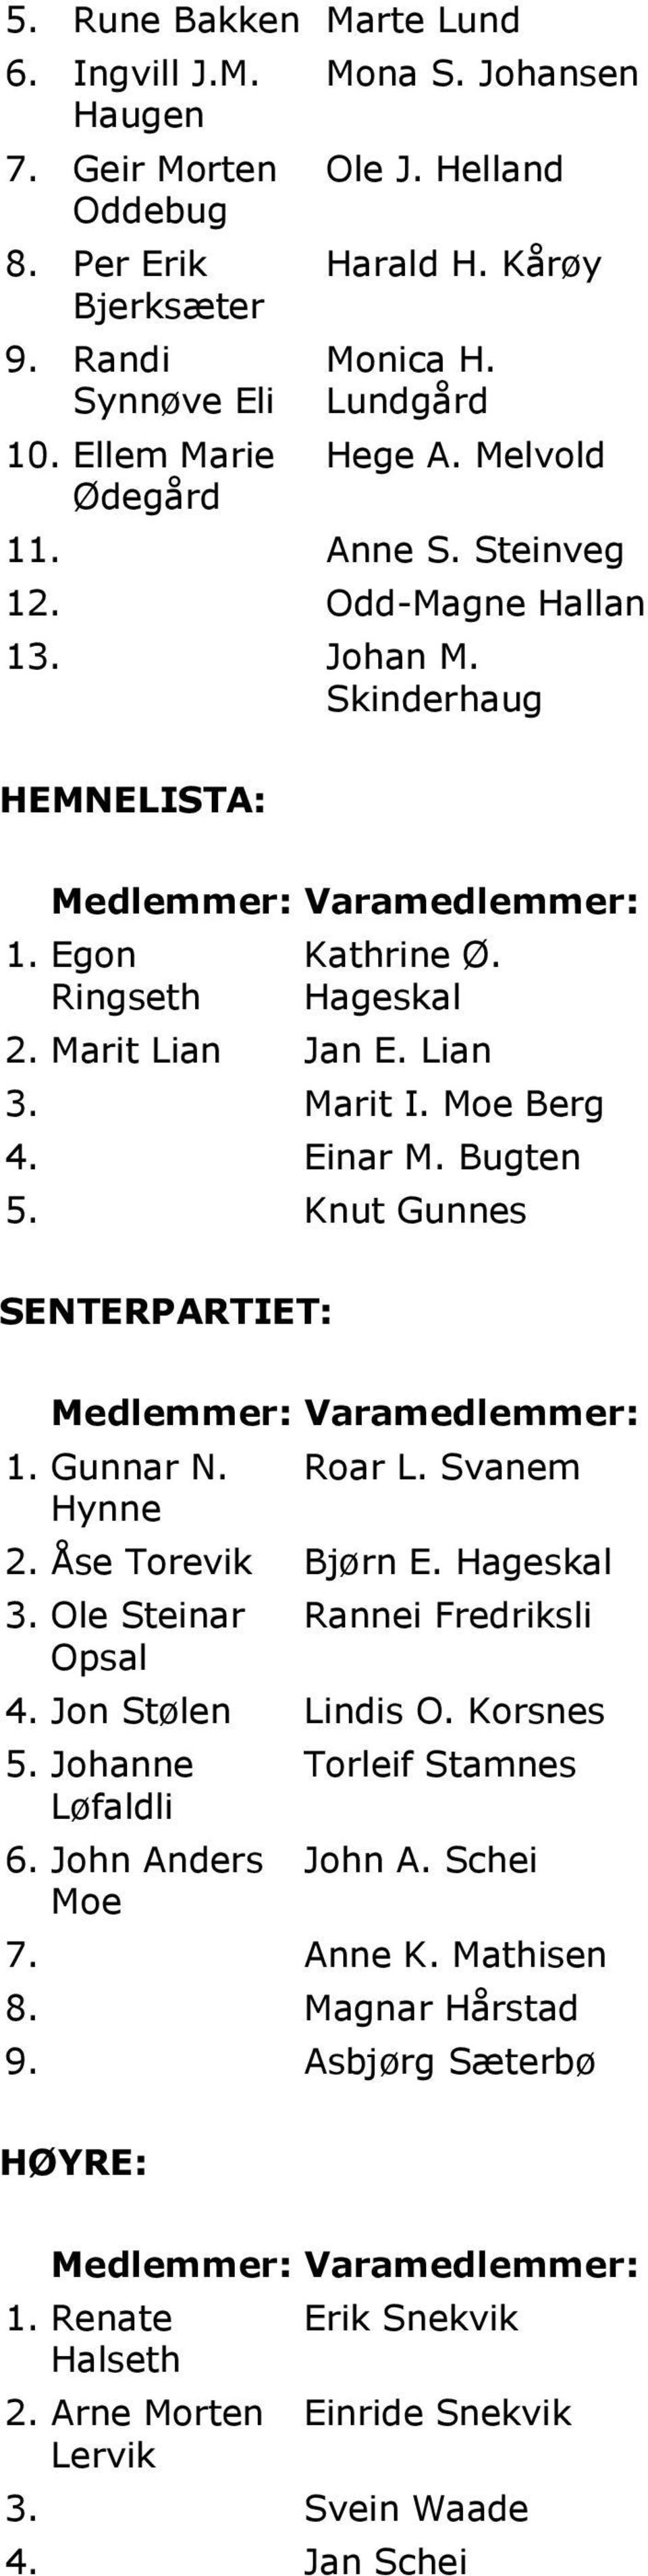 Marit I. Moe Berg 4. Einar M. Bugten 5. Knut Gunnes SENTERPARTIET: Medlemmer: Varamedlemmer: 1. Gunnar N. Hynne Roar L. Svanem 2. Åse Torevik Bjørn E. Hageskal 3.